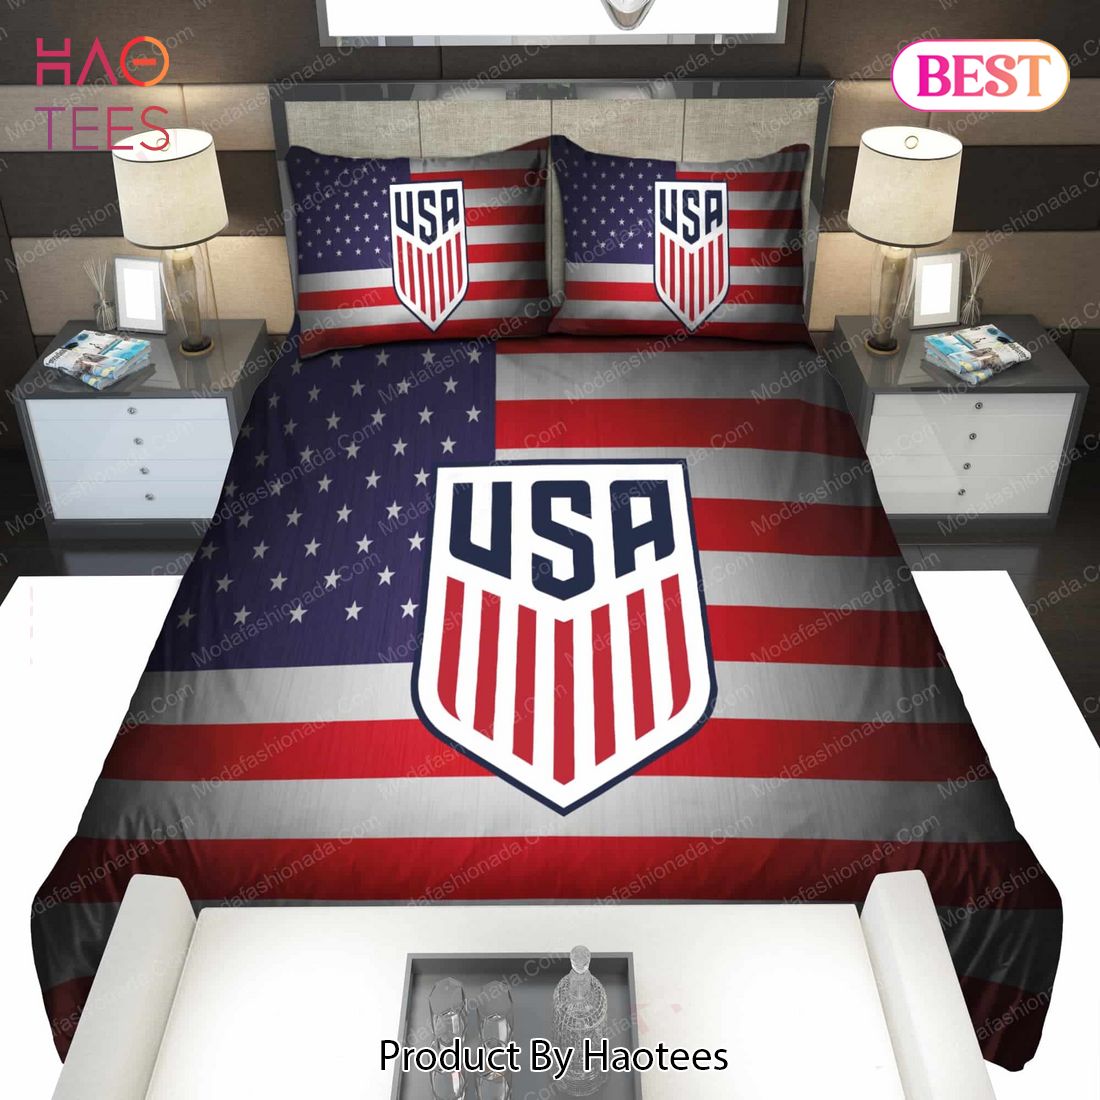 Logo United States Men's National Soccer Team Bedding Sets Bed Sets, Bedroom Sets, Comforter Sets, Duvet Cover, Bedspread